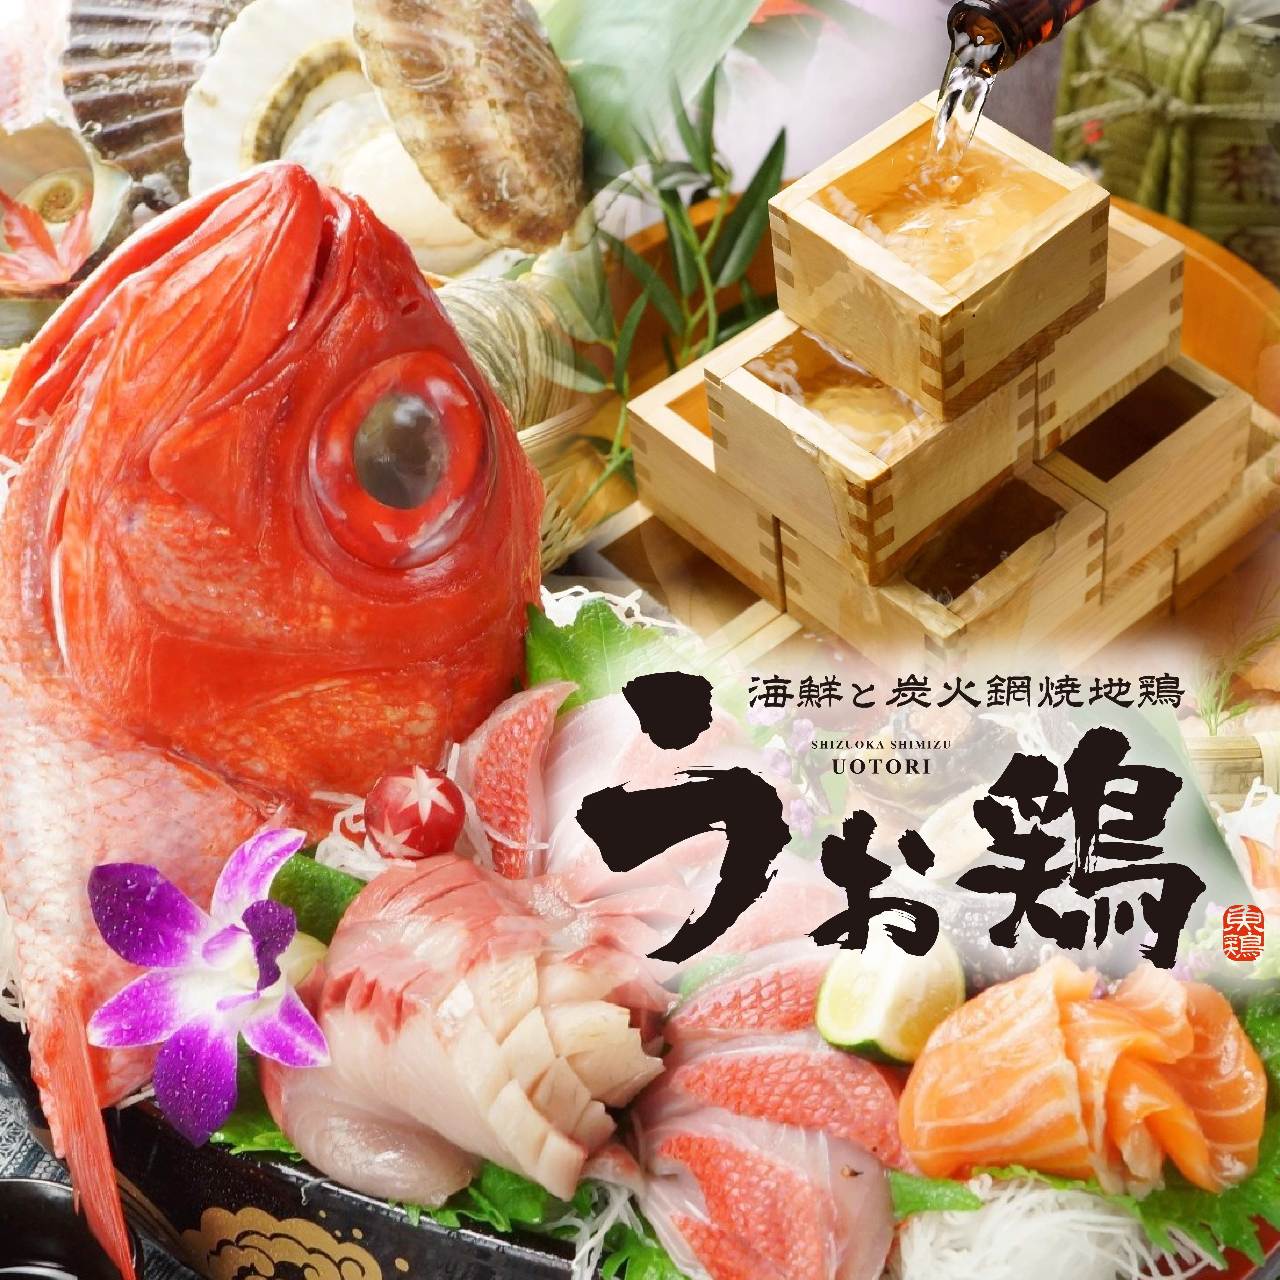 海鮮と産地鶏の炭火焼き うお鶏 富士駅前店のURL1